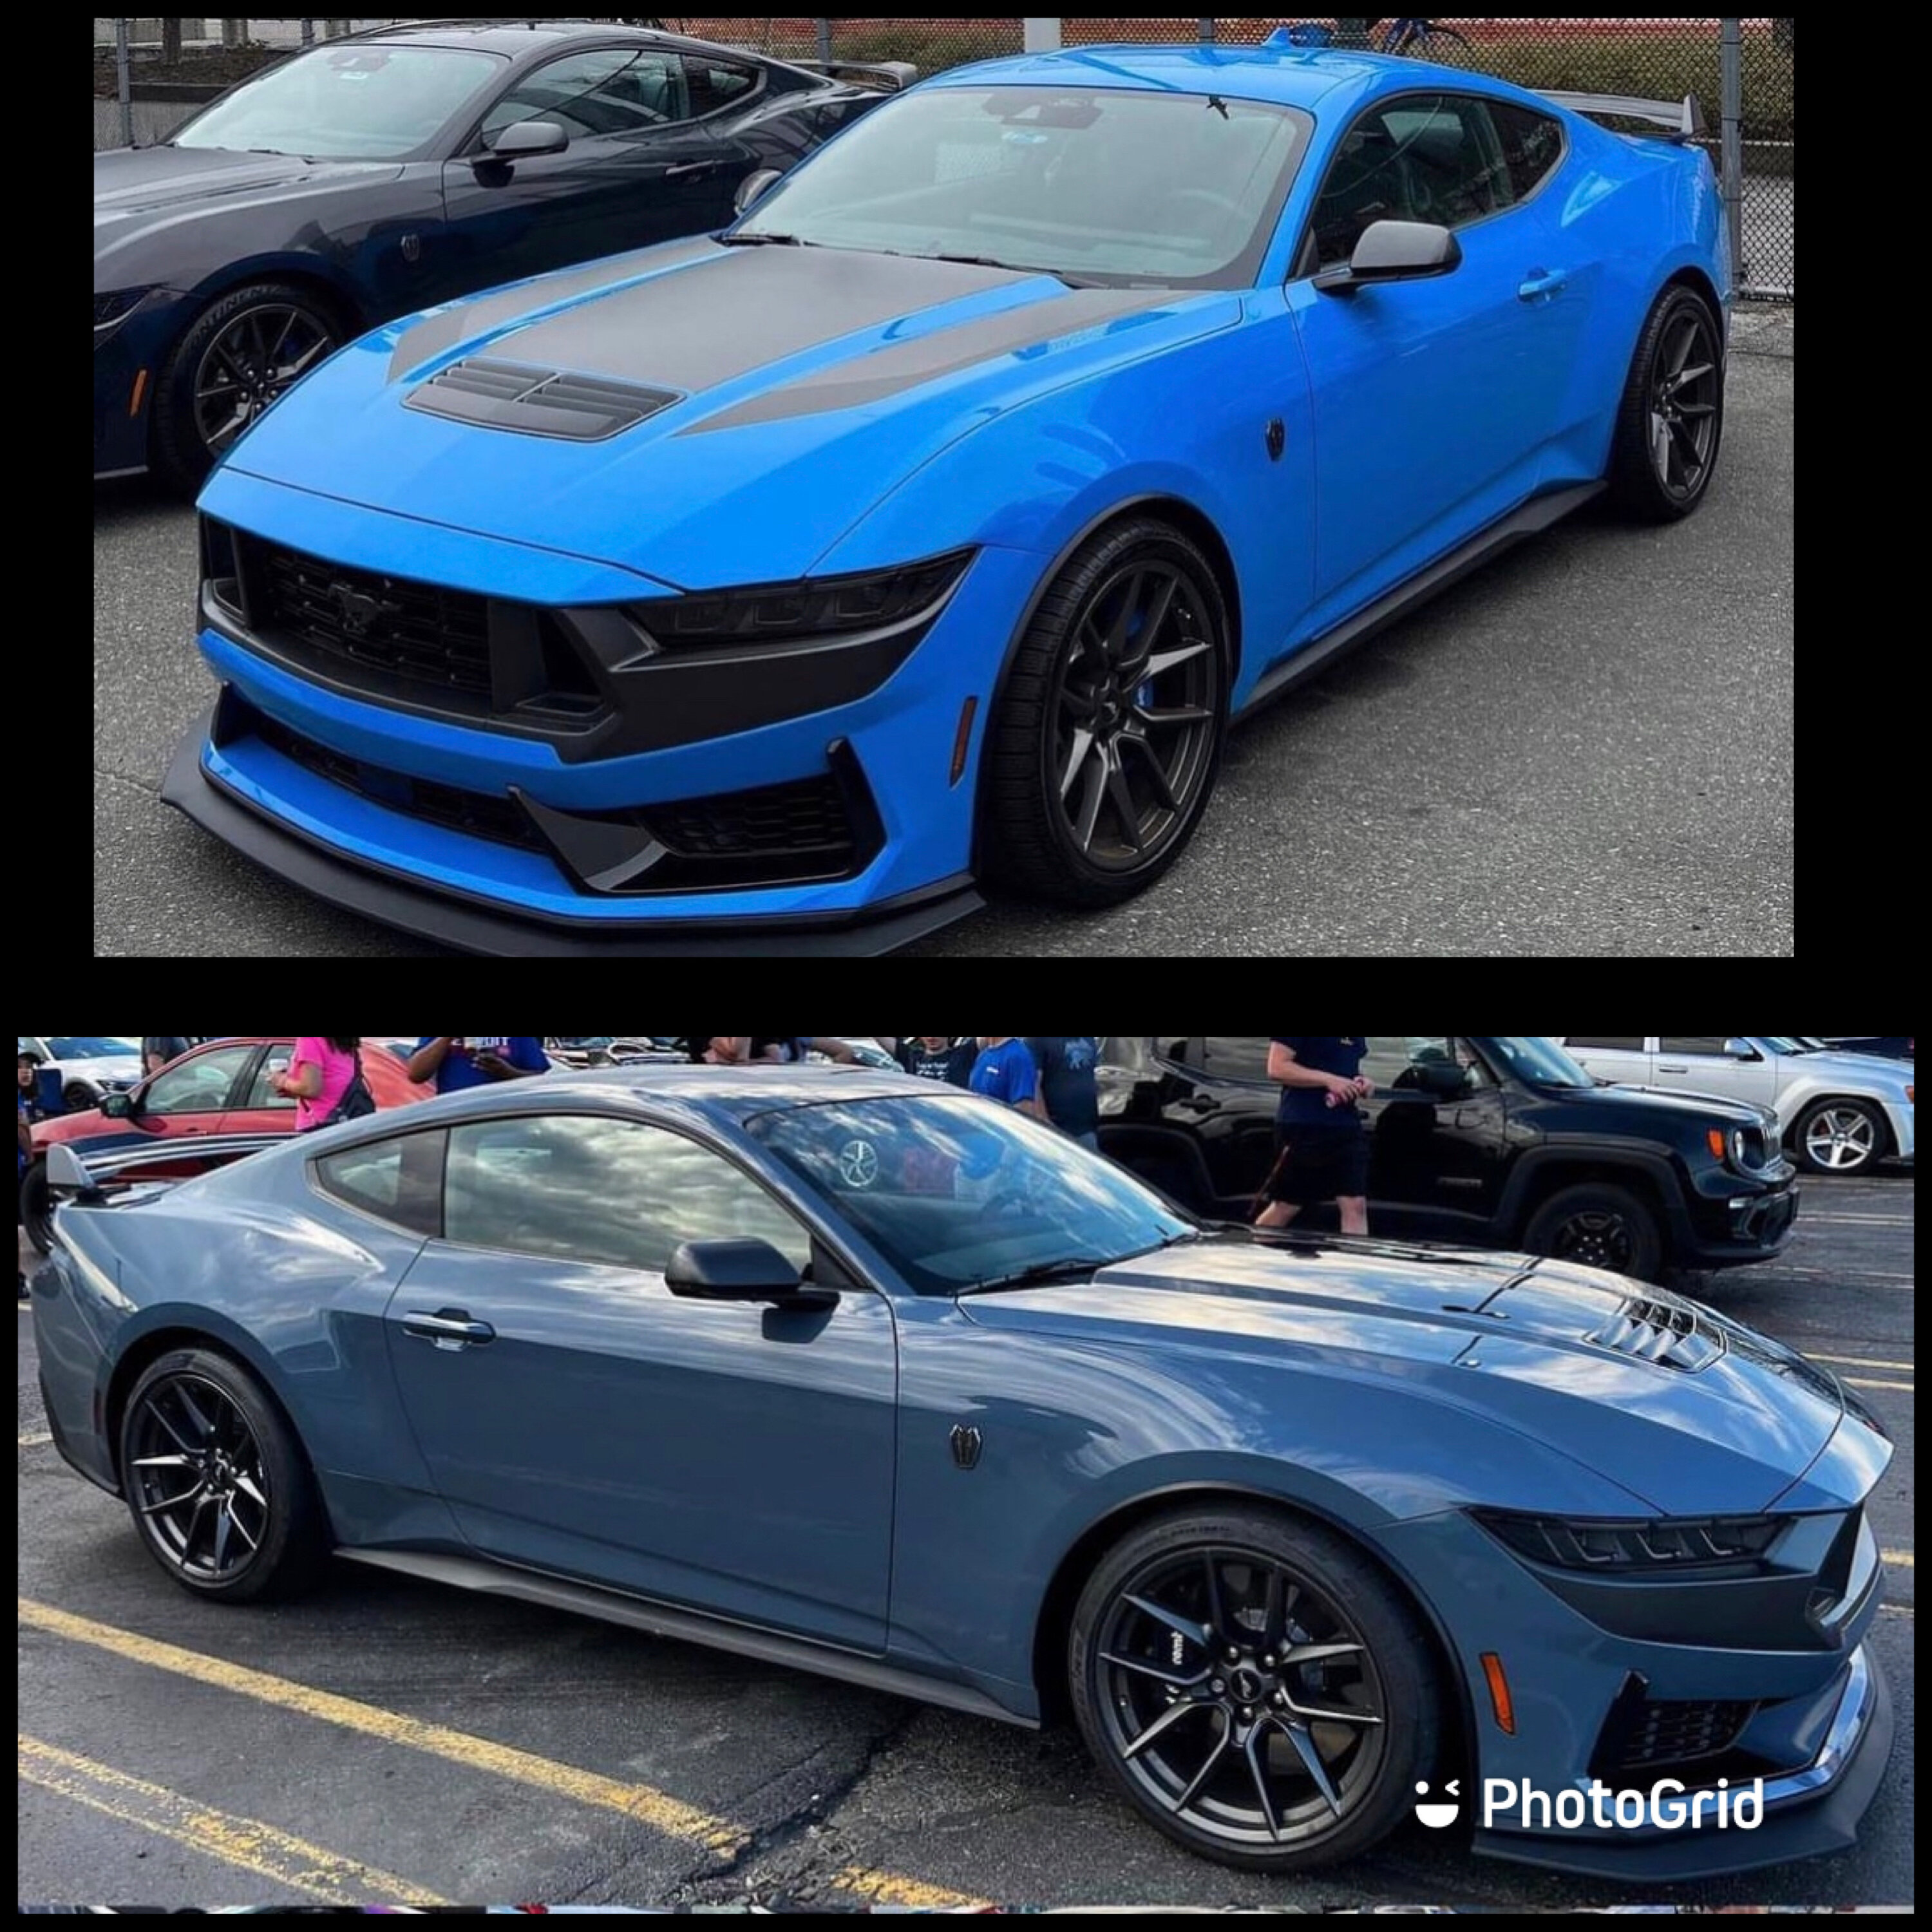 S650 Mustang Grabber Blue vs Vapor Blue Poll 6F9D7E43-74F5-473C-A91C-53872287A044